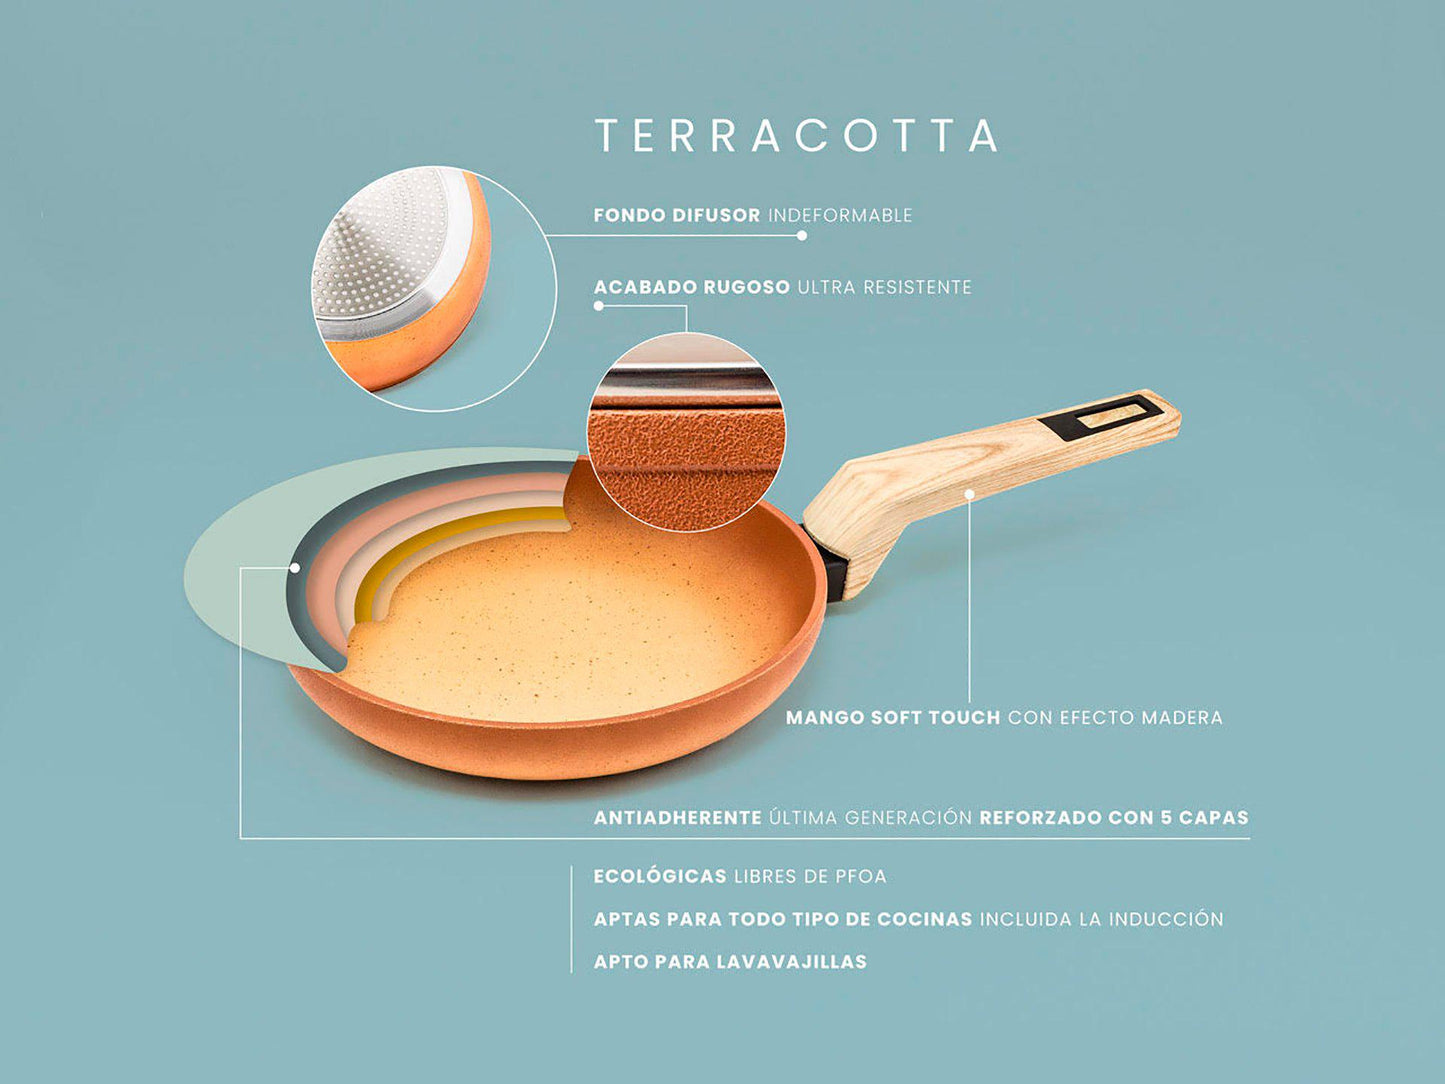 Juego de 3 sartenes Terracotta 20, 24 y 28 cms Ø aptas para todo tipo de cocinas, incluso inducción